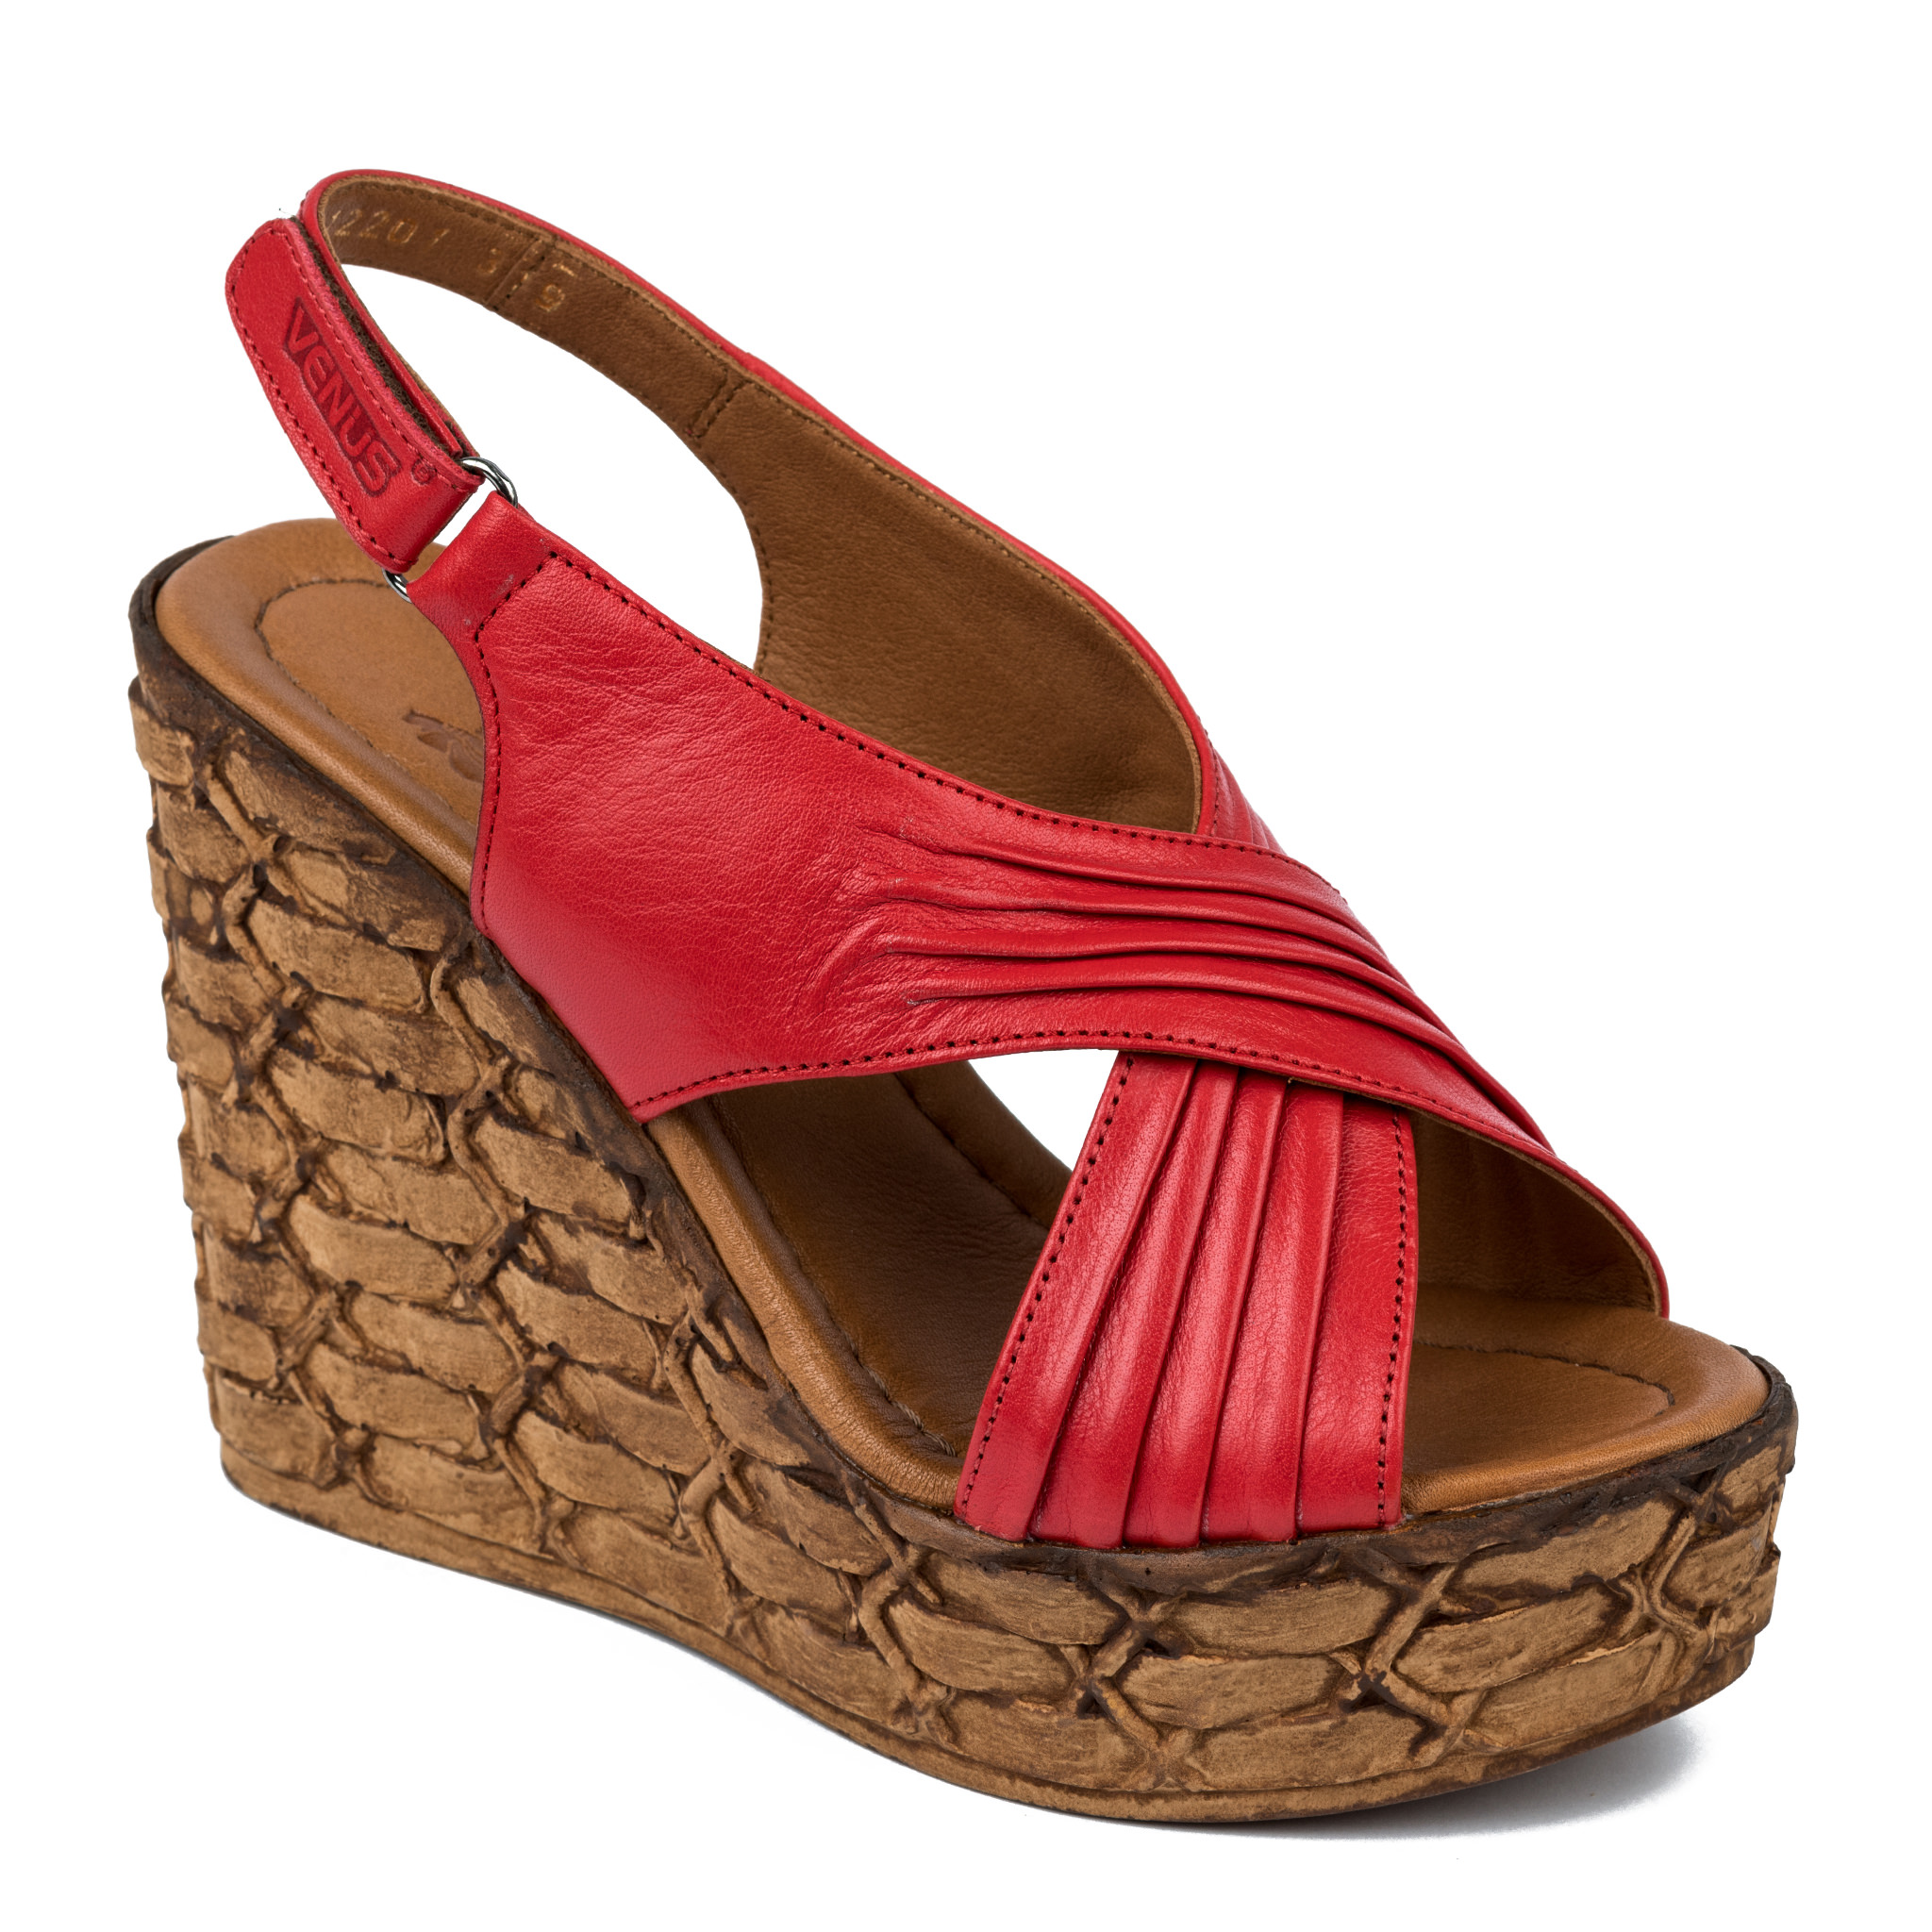 Women sandals A256 - RED